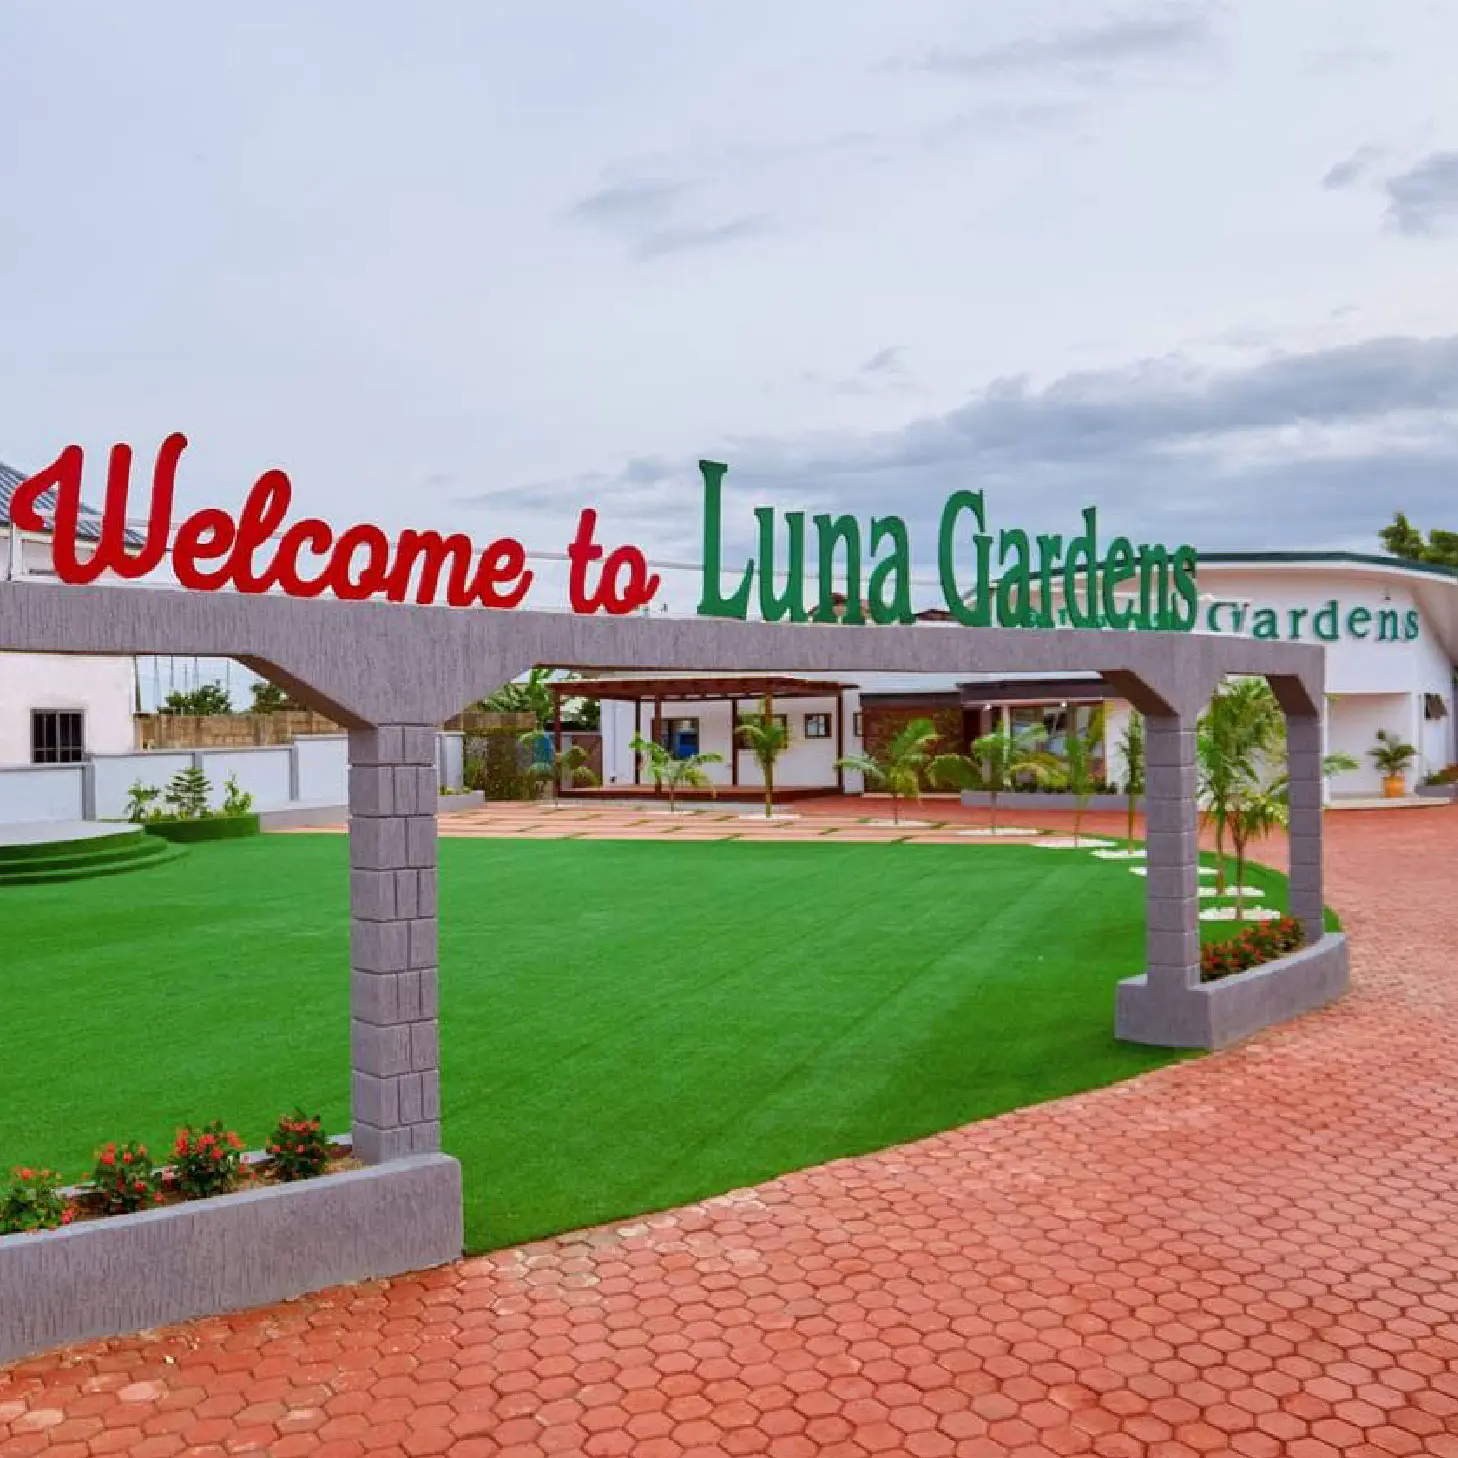 Luna Gardens